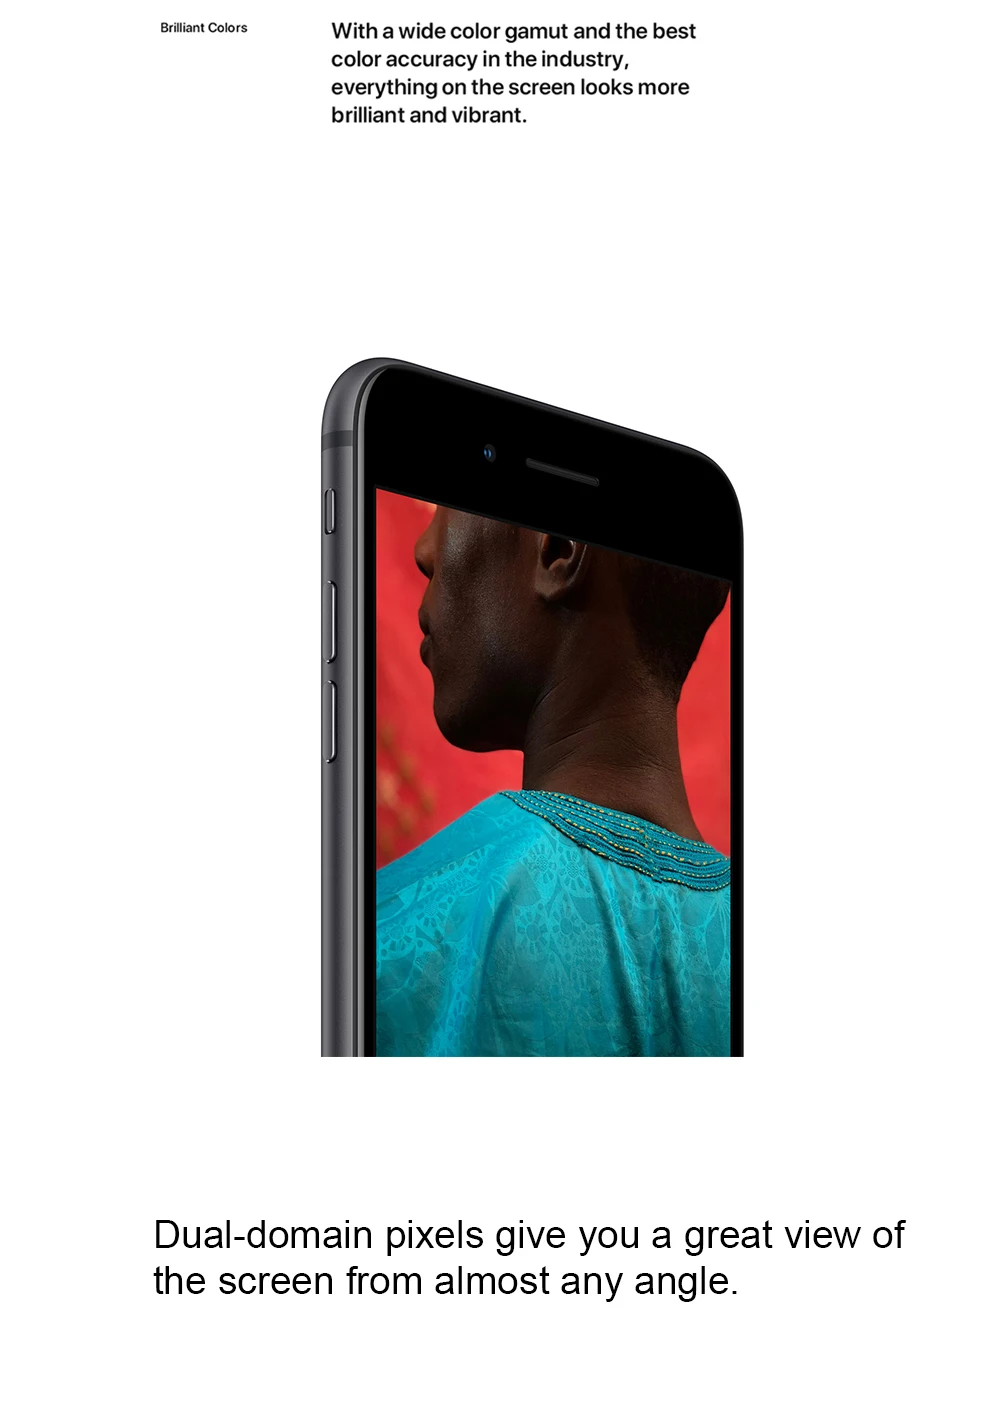 Apple iPhone 8 4,7 "4G LTE 2 Гб ОЗУ 64 Гб/256 Гб ПЗУ Беспроводная зарядка Hexa Core 12MP Touch ID IOS 11 Оригинальный разблокированный мобильный телефон